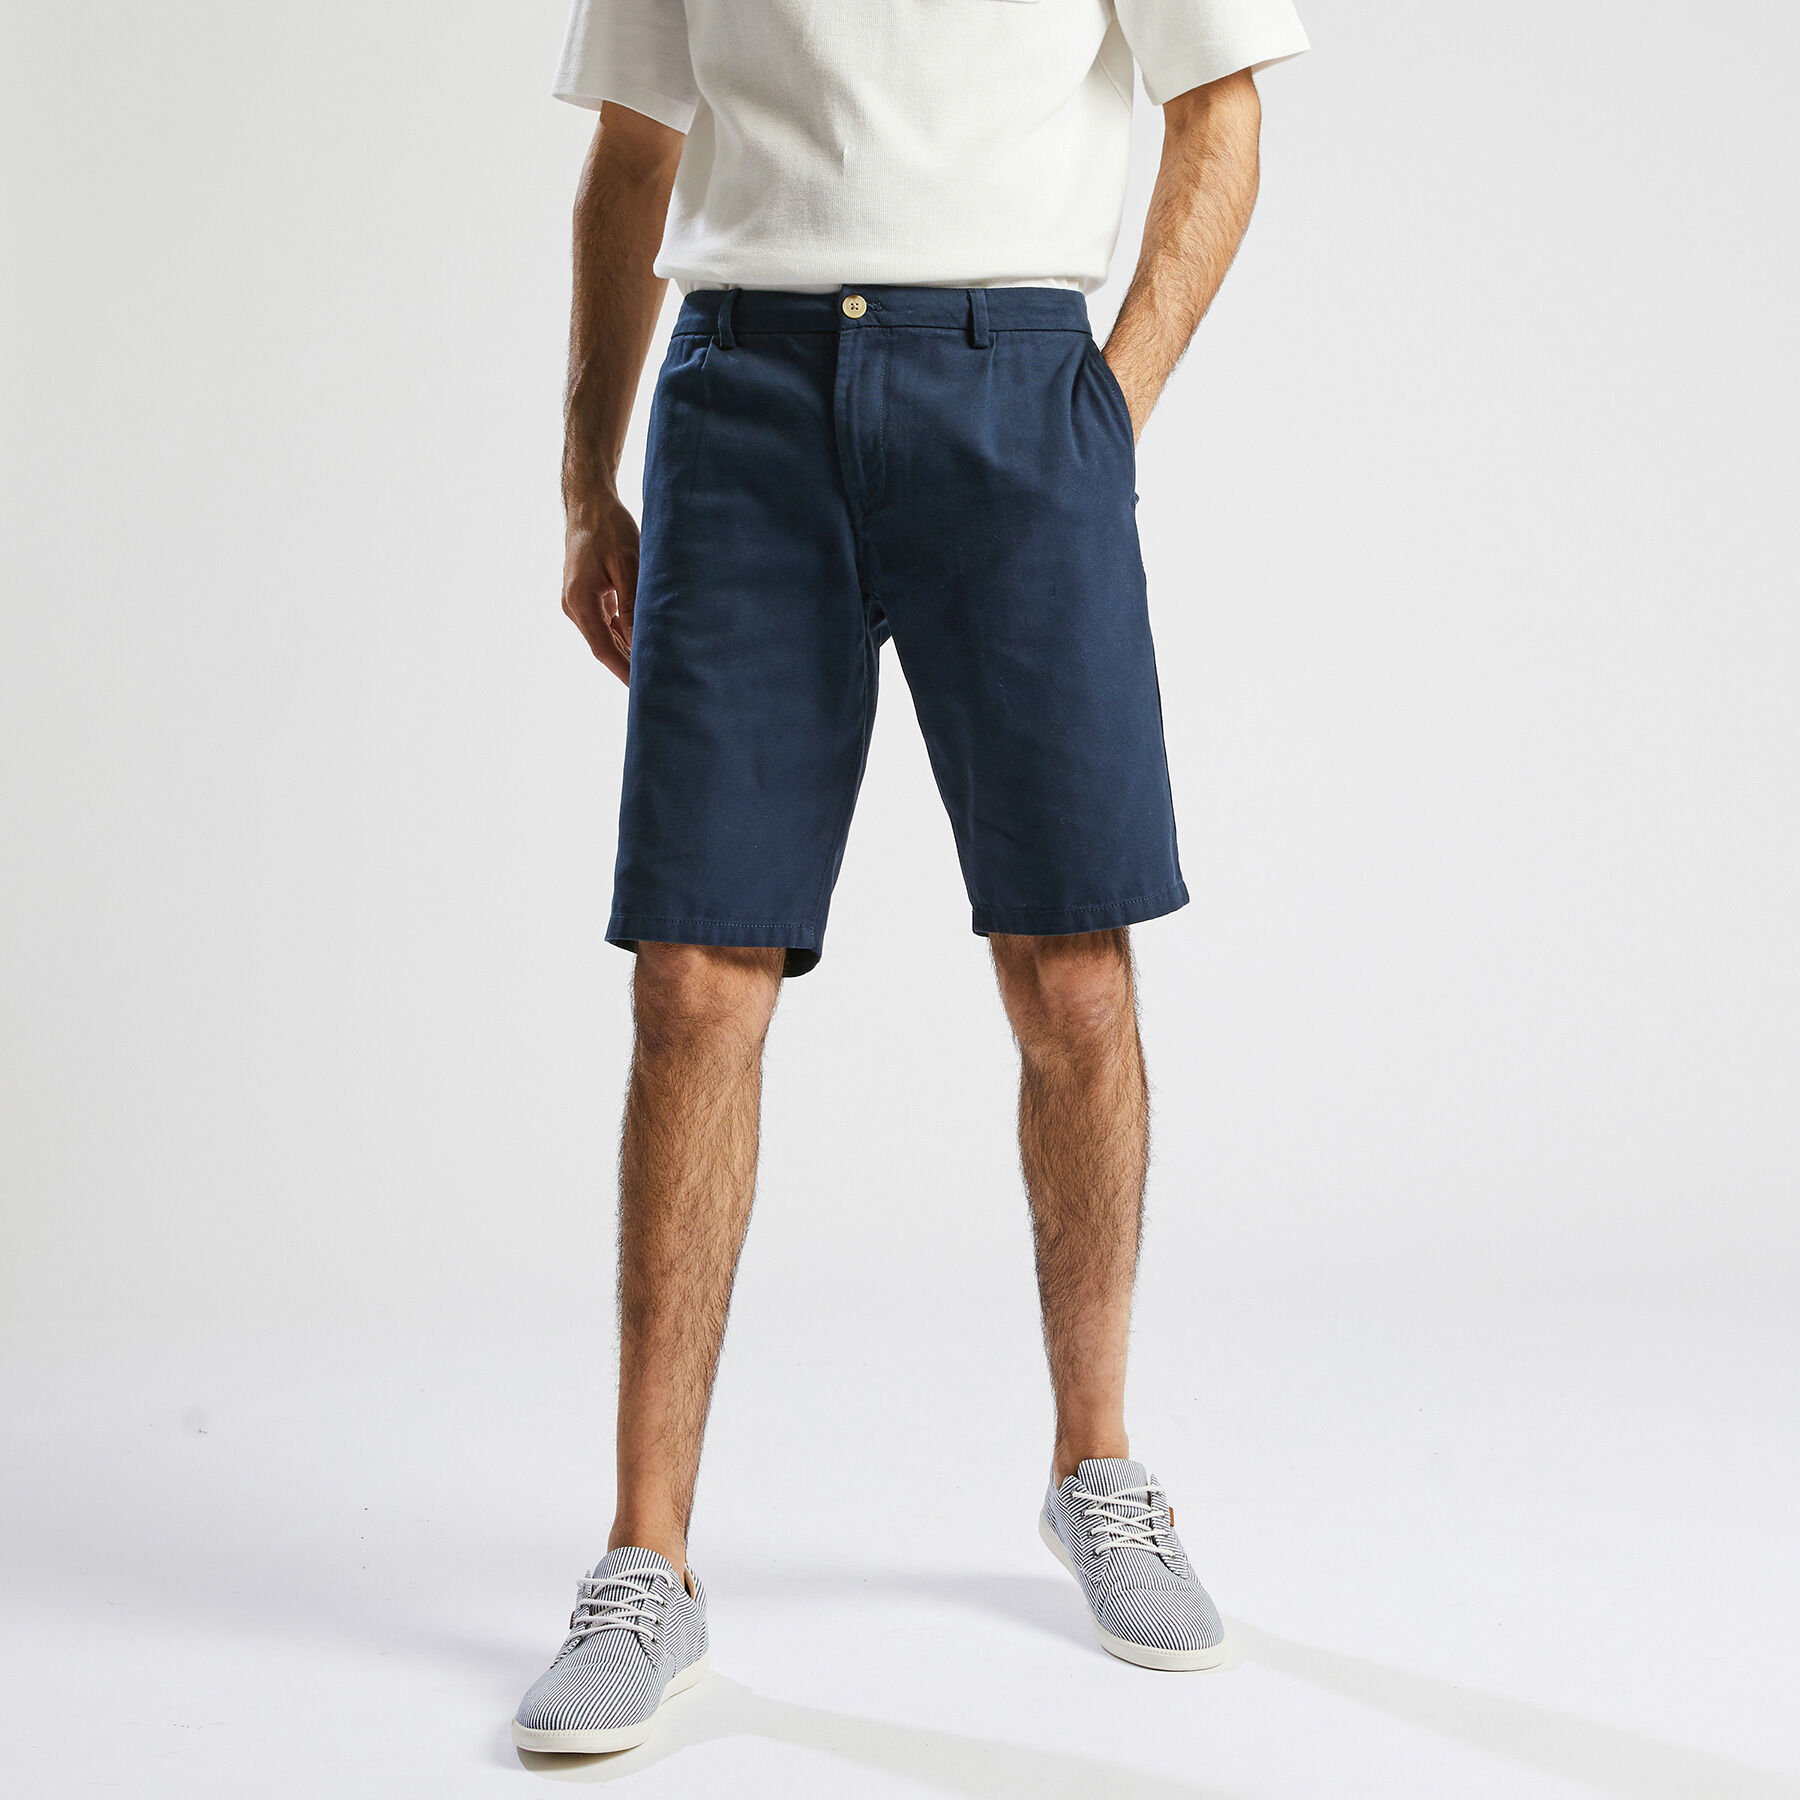 Shorts et bermudas Coton AMI pour homme en coloris Neutre Homme Vêtements Shorts Bermudas 